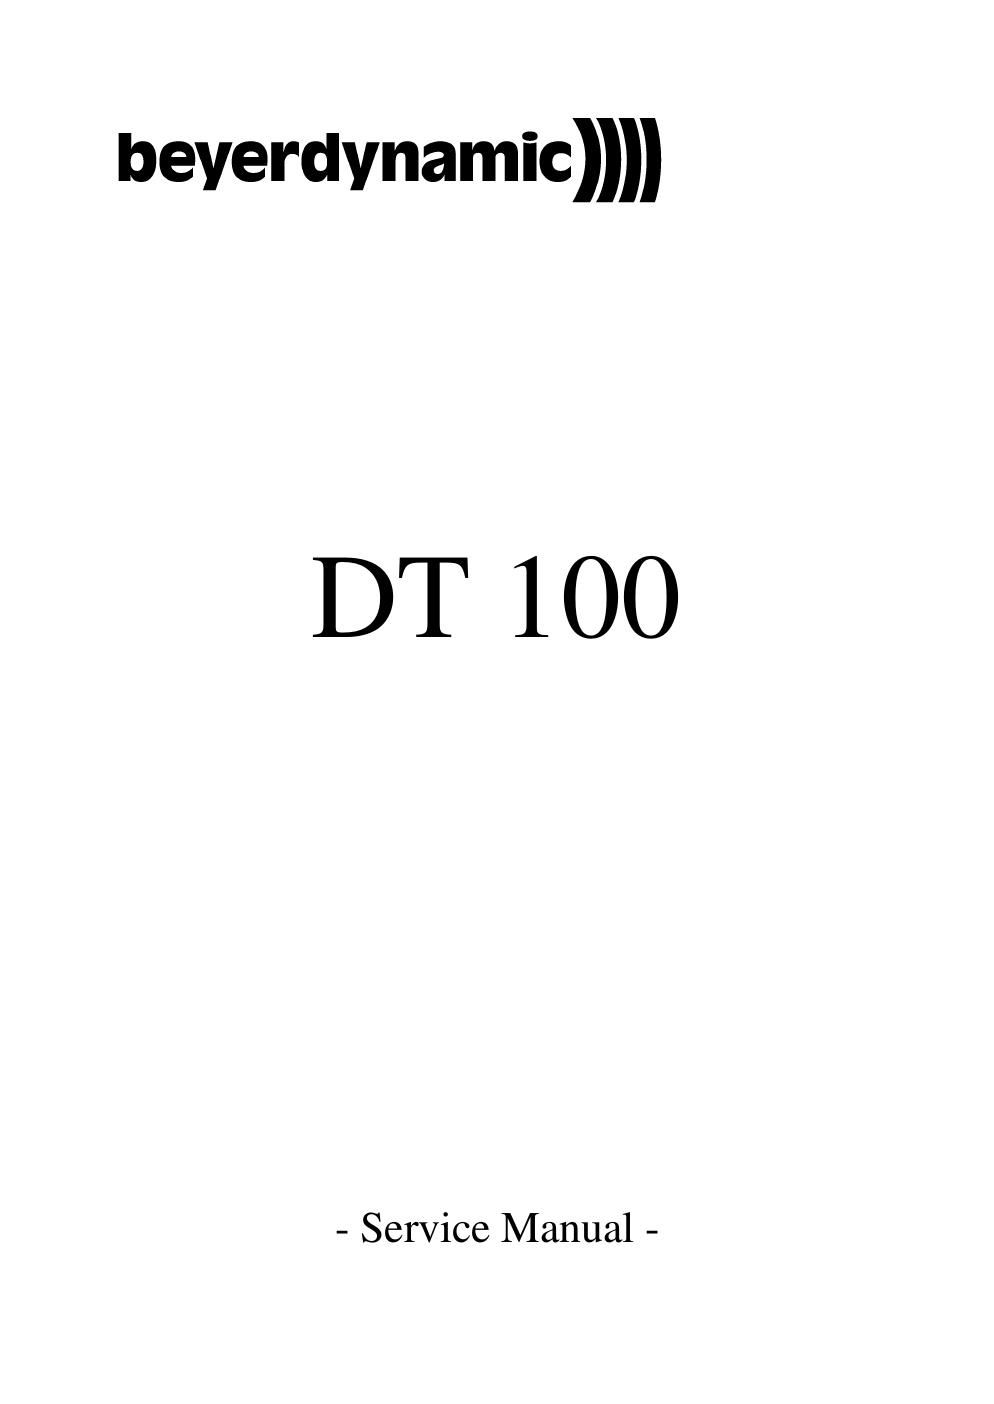 beyerdynamic dt 100 service manual